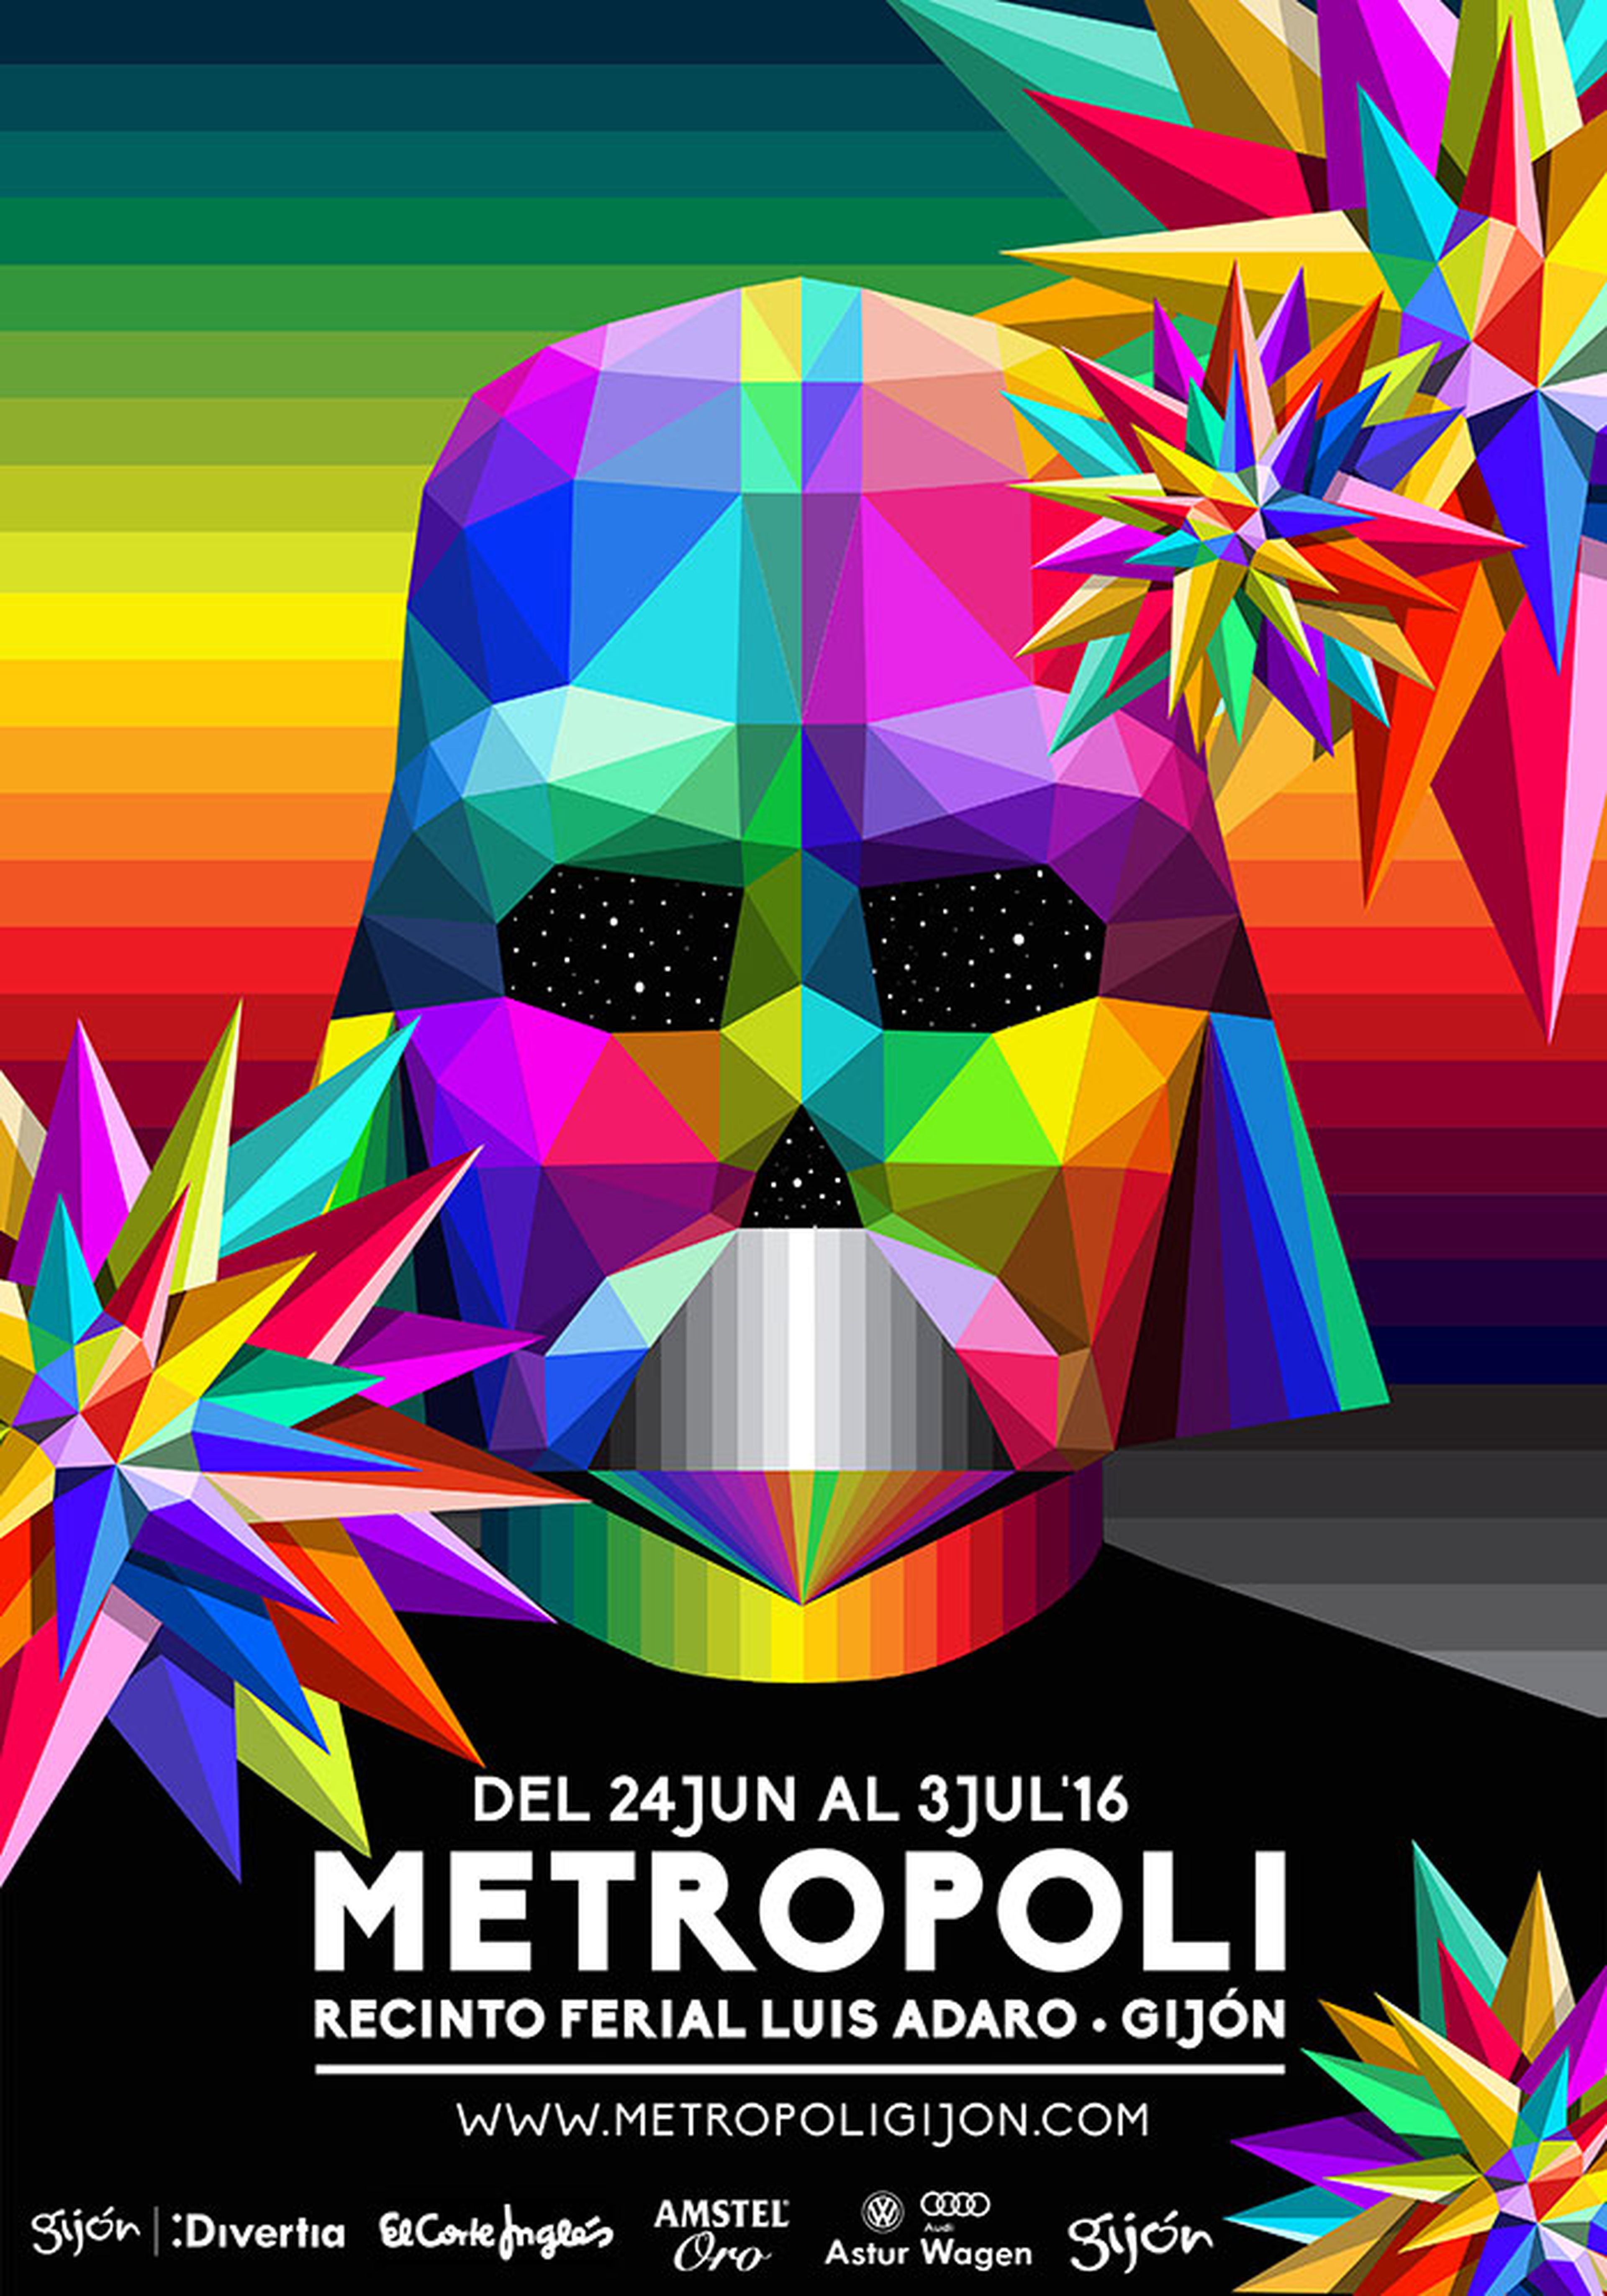 El cartel de Metrópoli 2016 presenta a Darth Vader diseñado por el artista cántabro Okuda San Miguel.